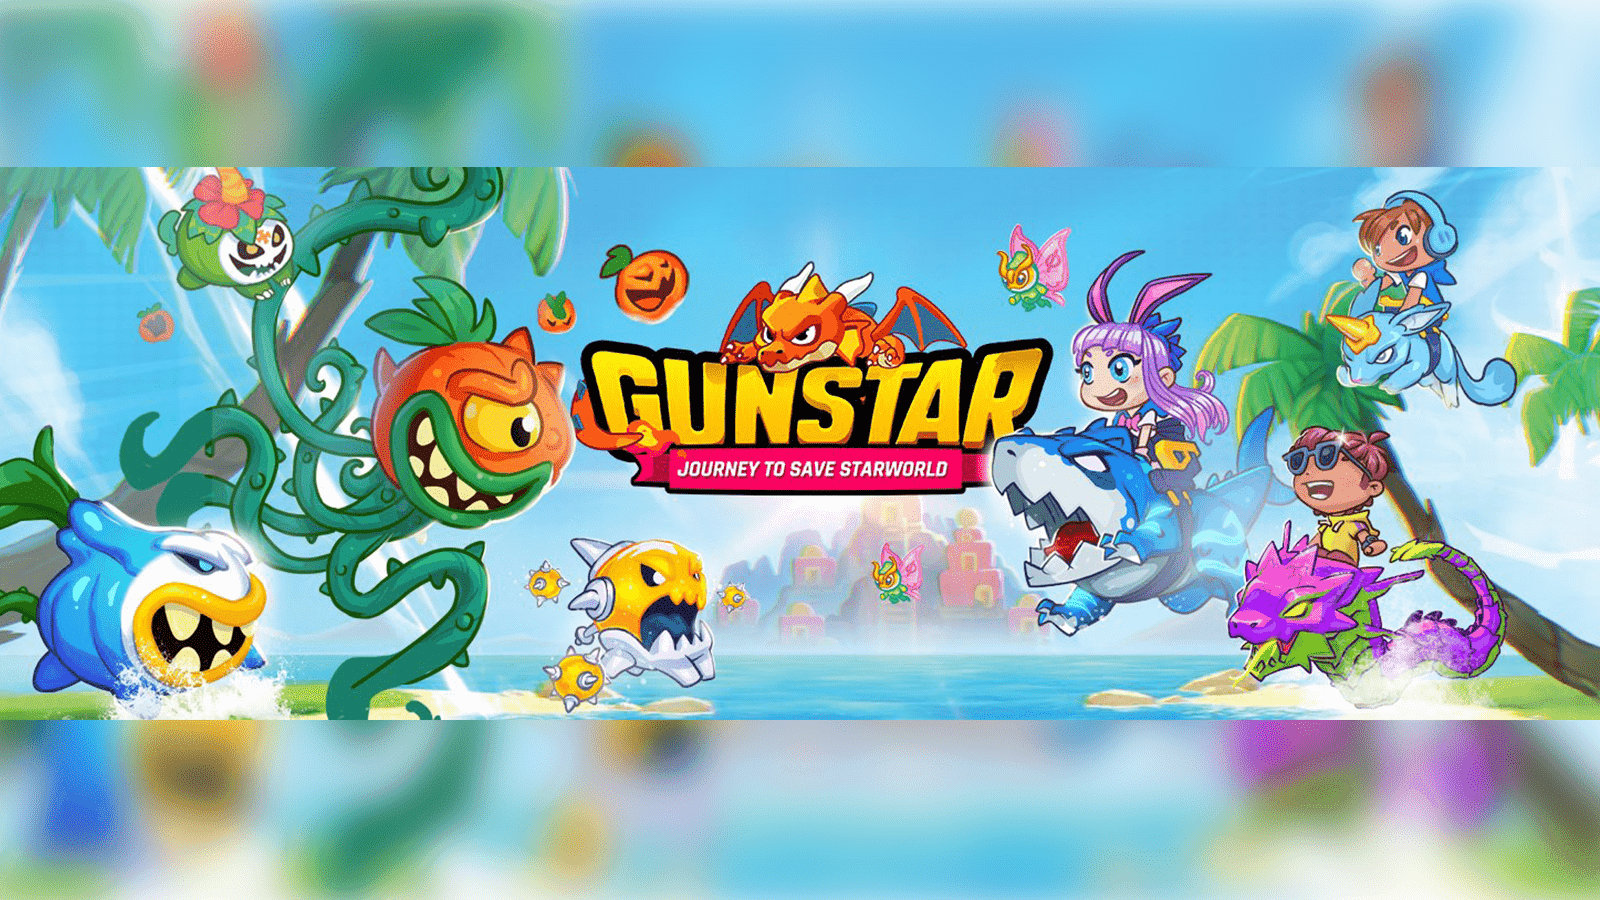 GunStar Metaverse - Game Review - Play Games image 3